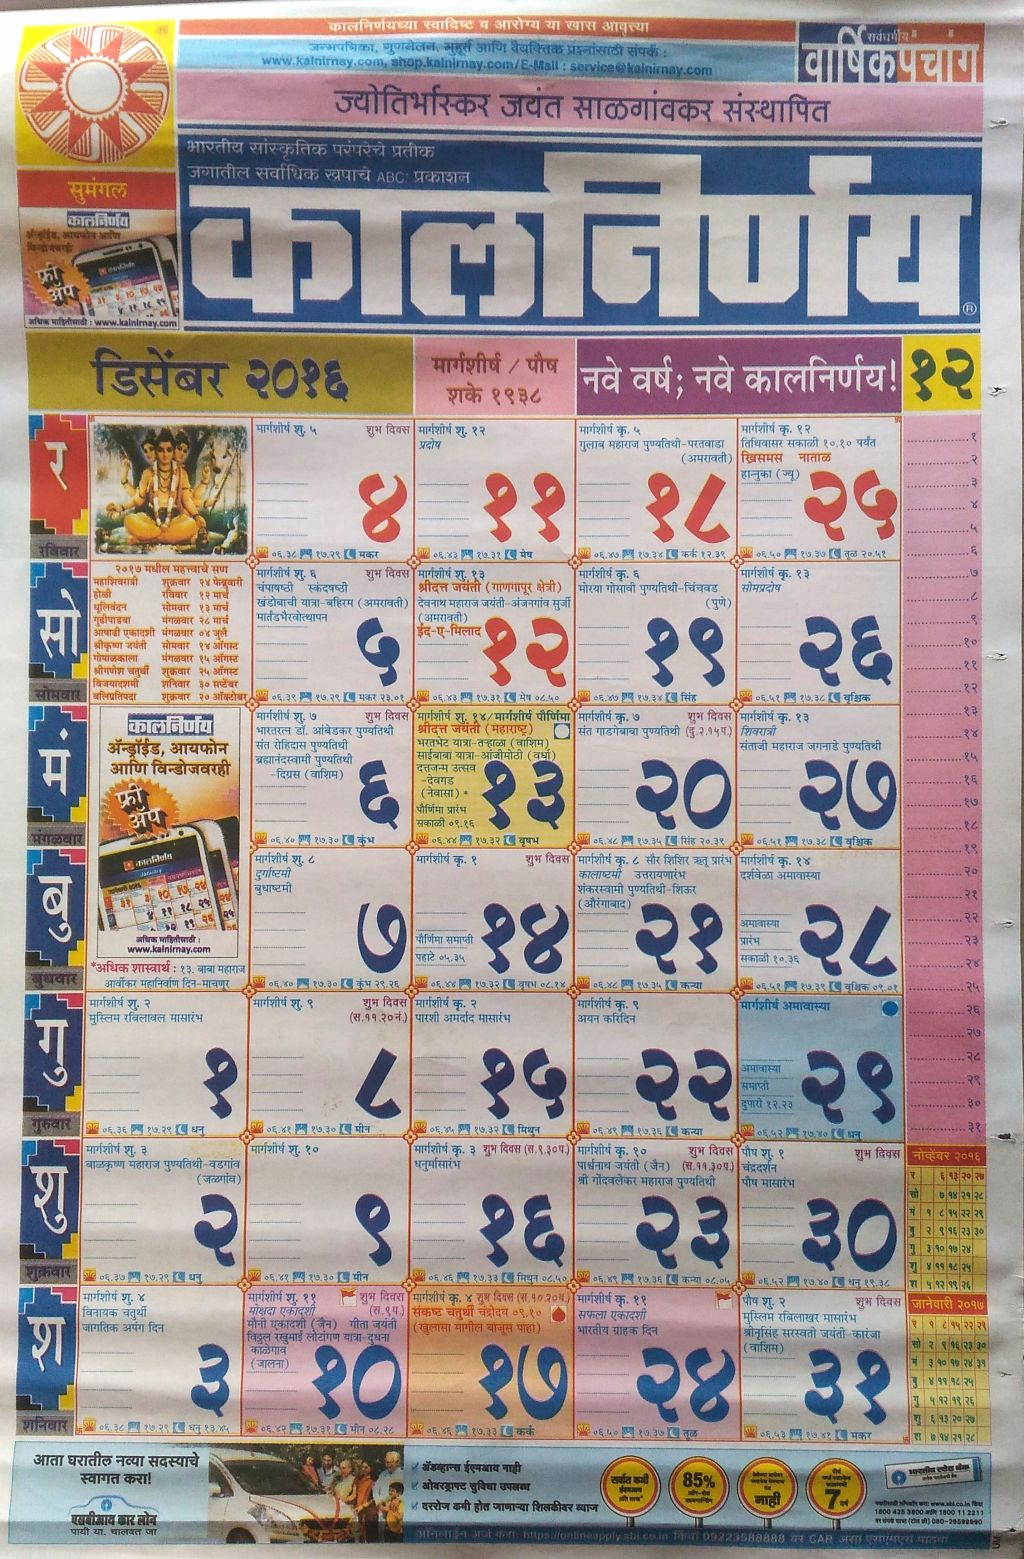 kalnirnay hindi calendar 2018 pdf free download